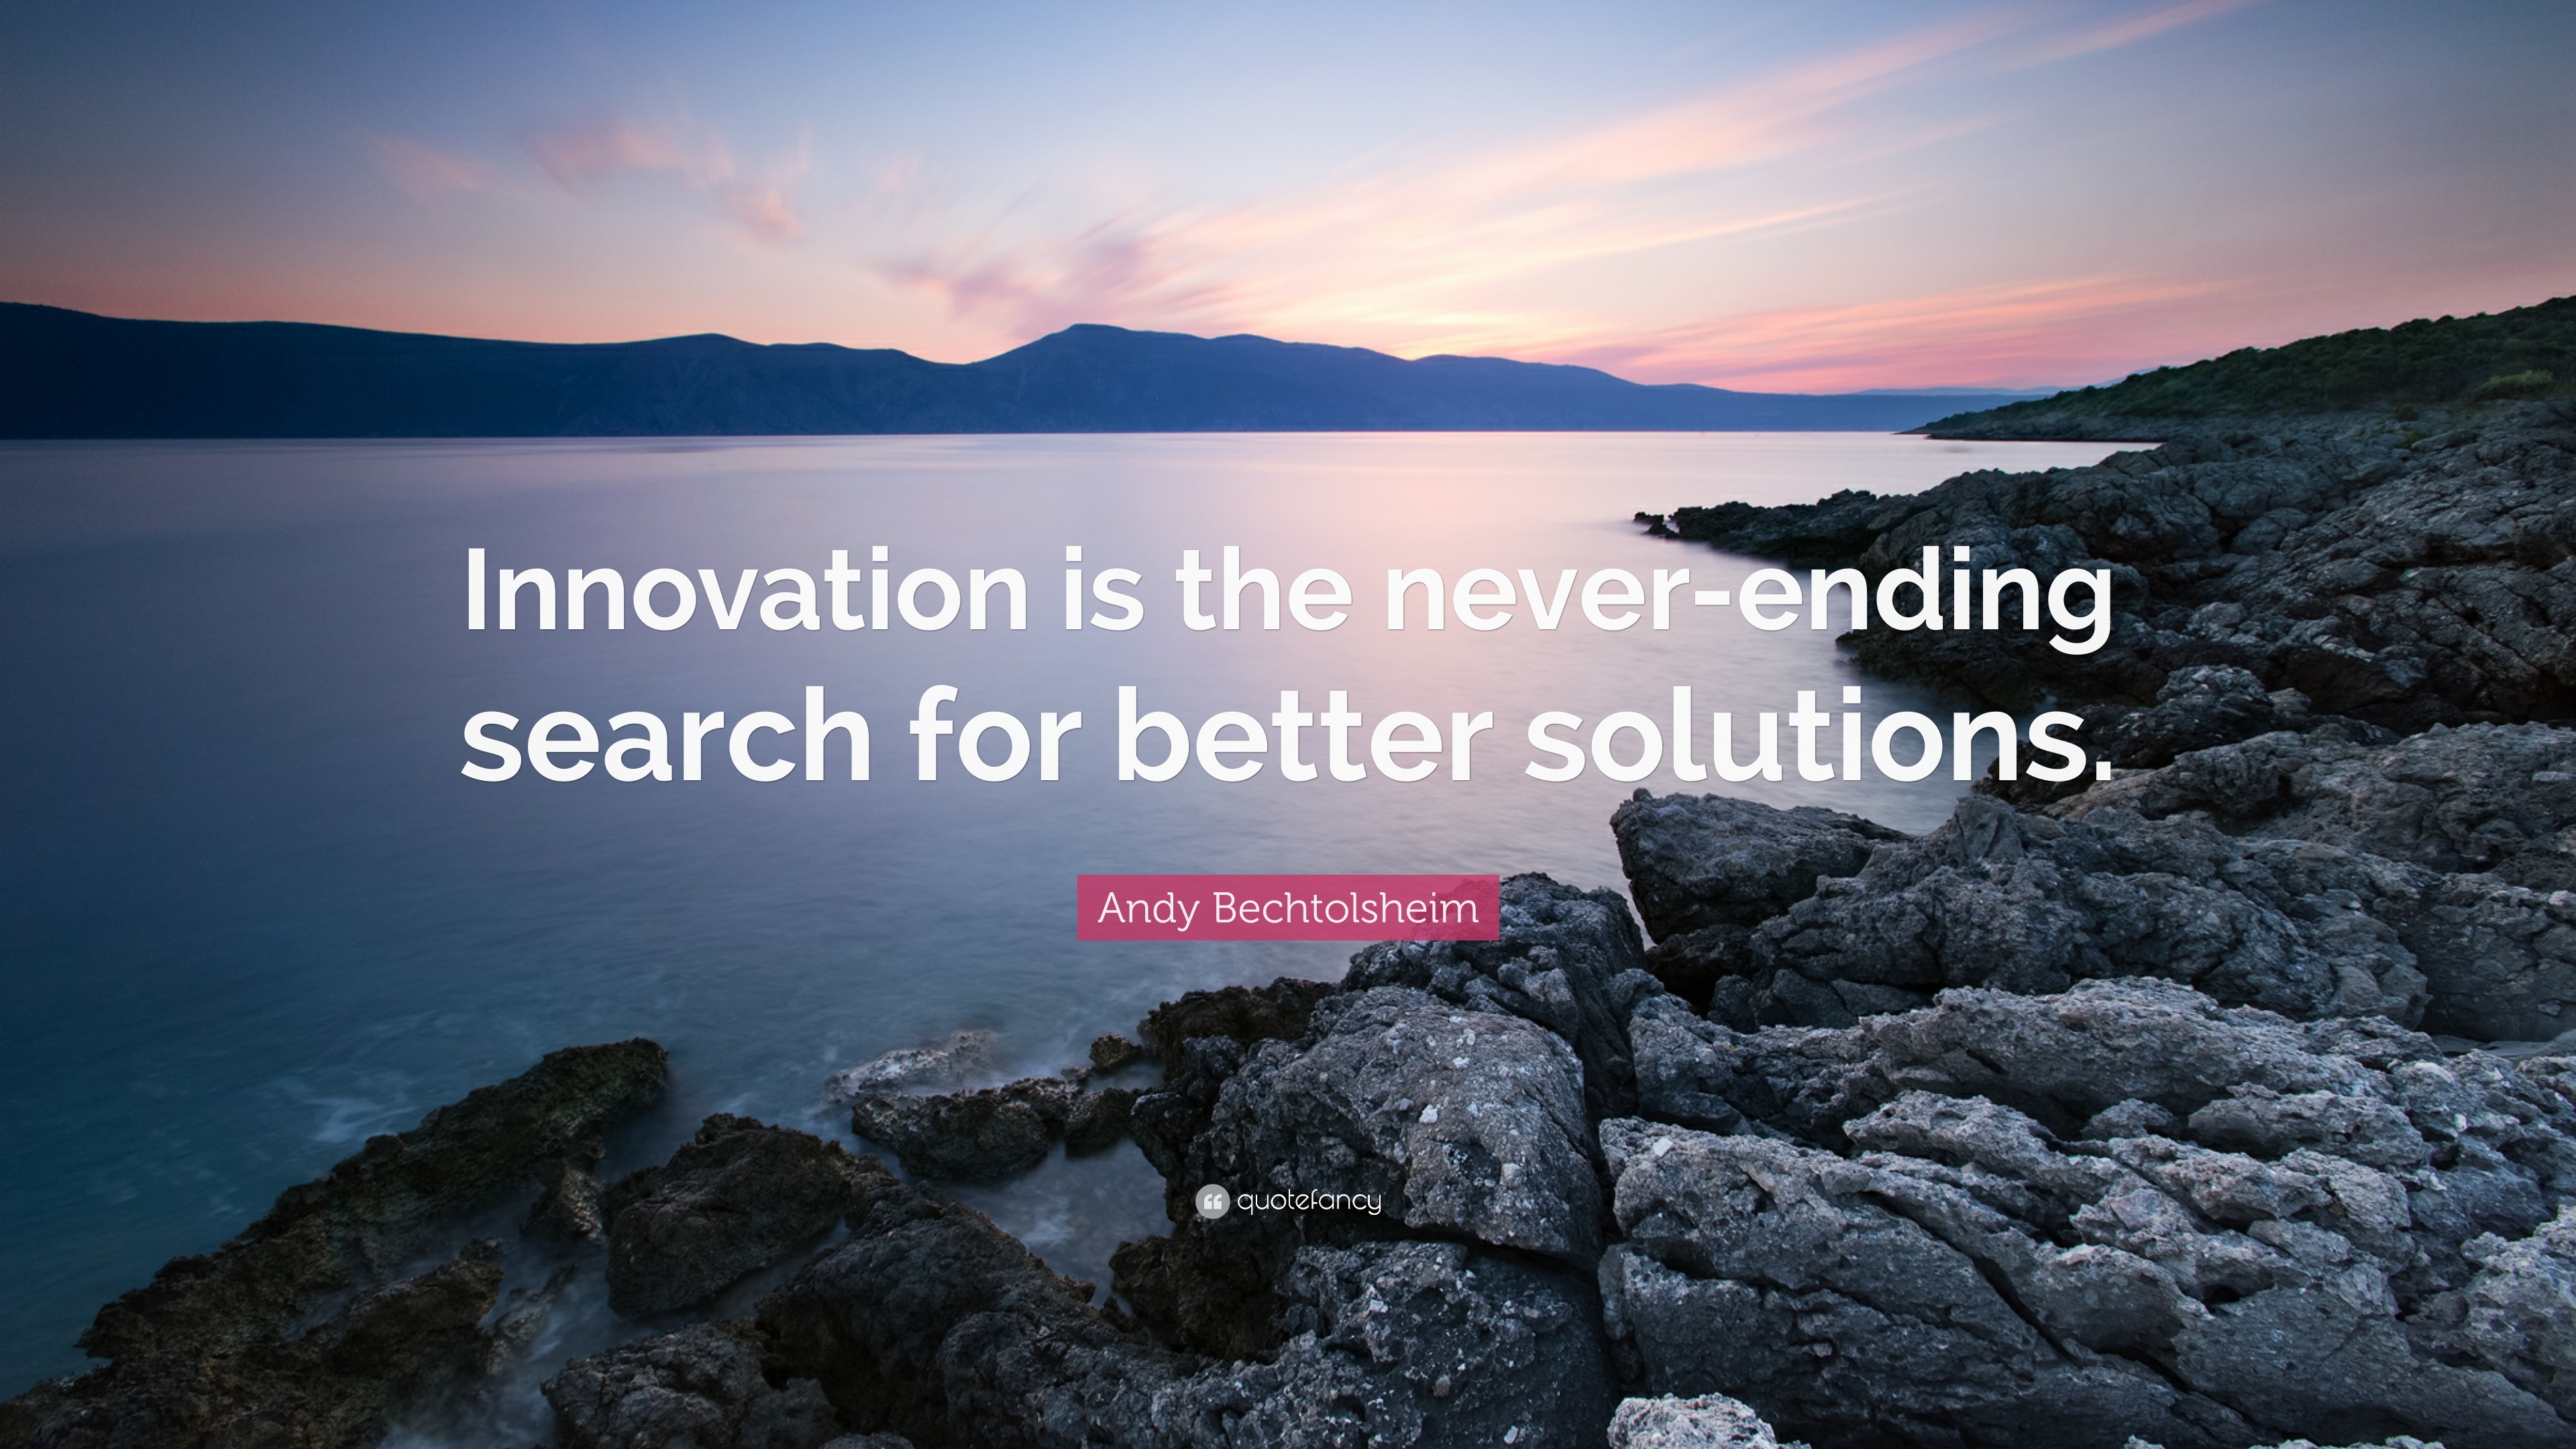 innovation quotes einstein